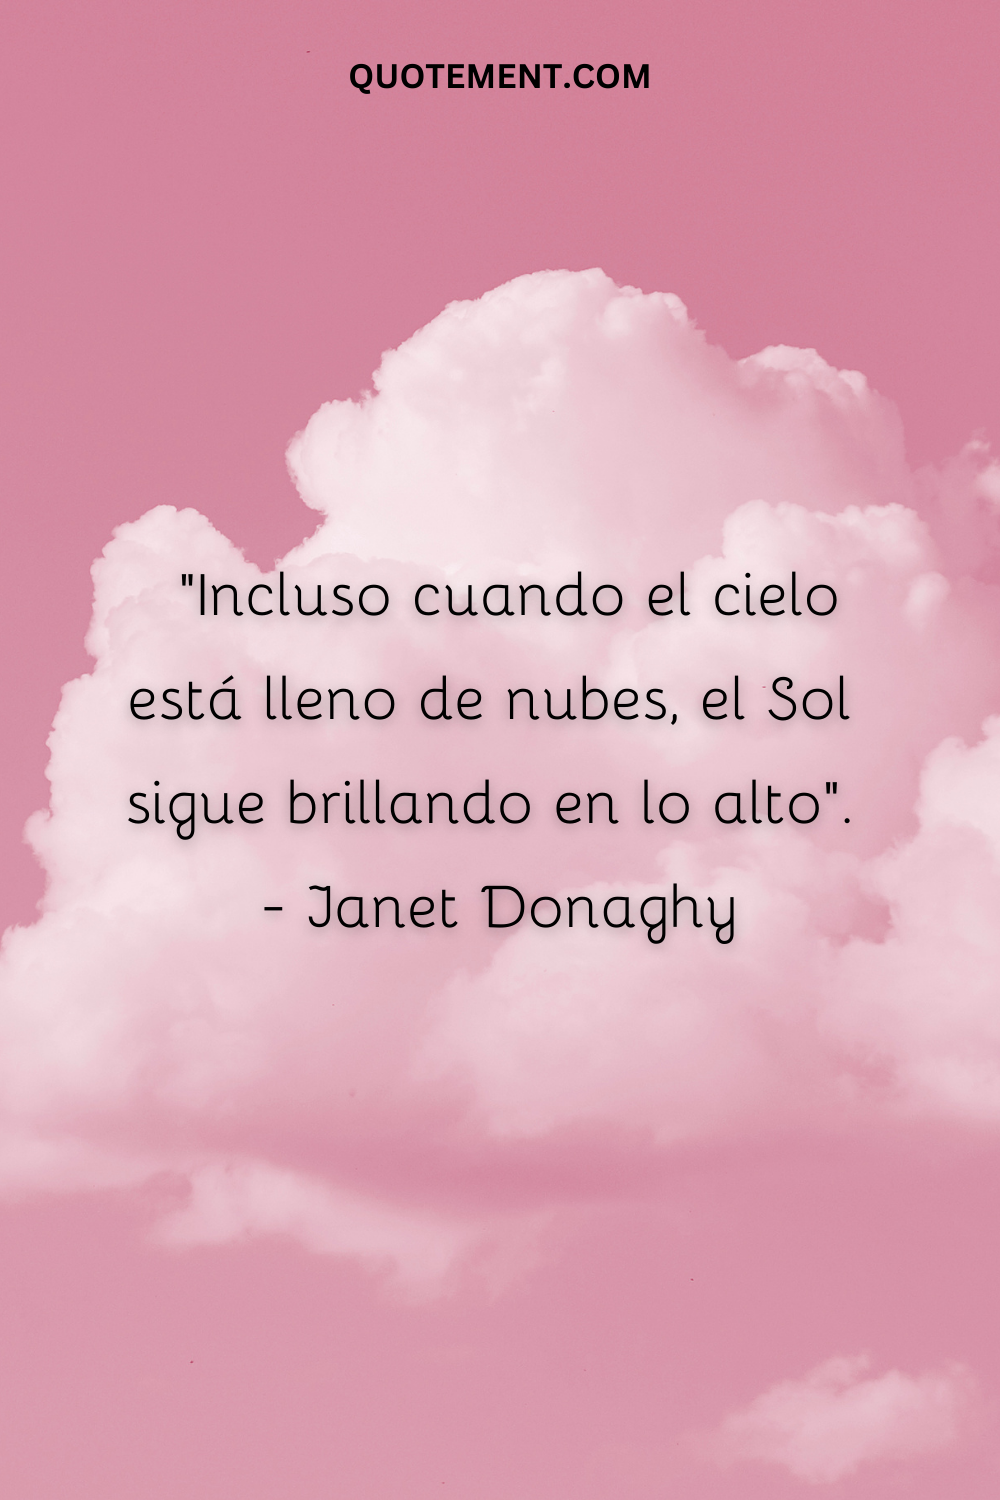 "Incluso cuando el cielo está lleno de nubes, el Sol sigue brillando en lo alto". - Janet Donaghy